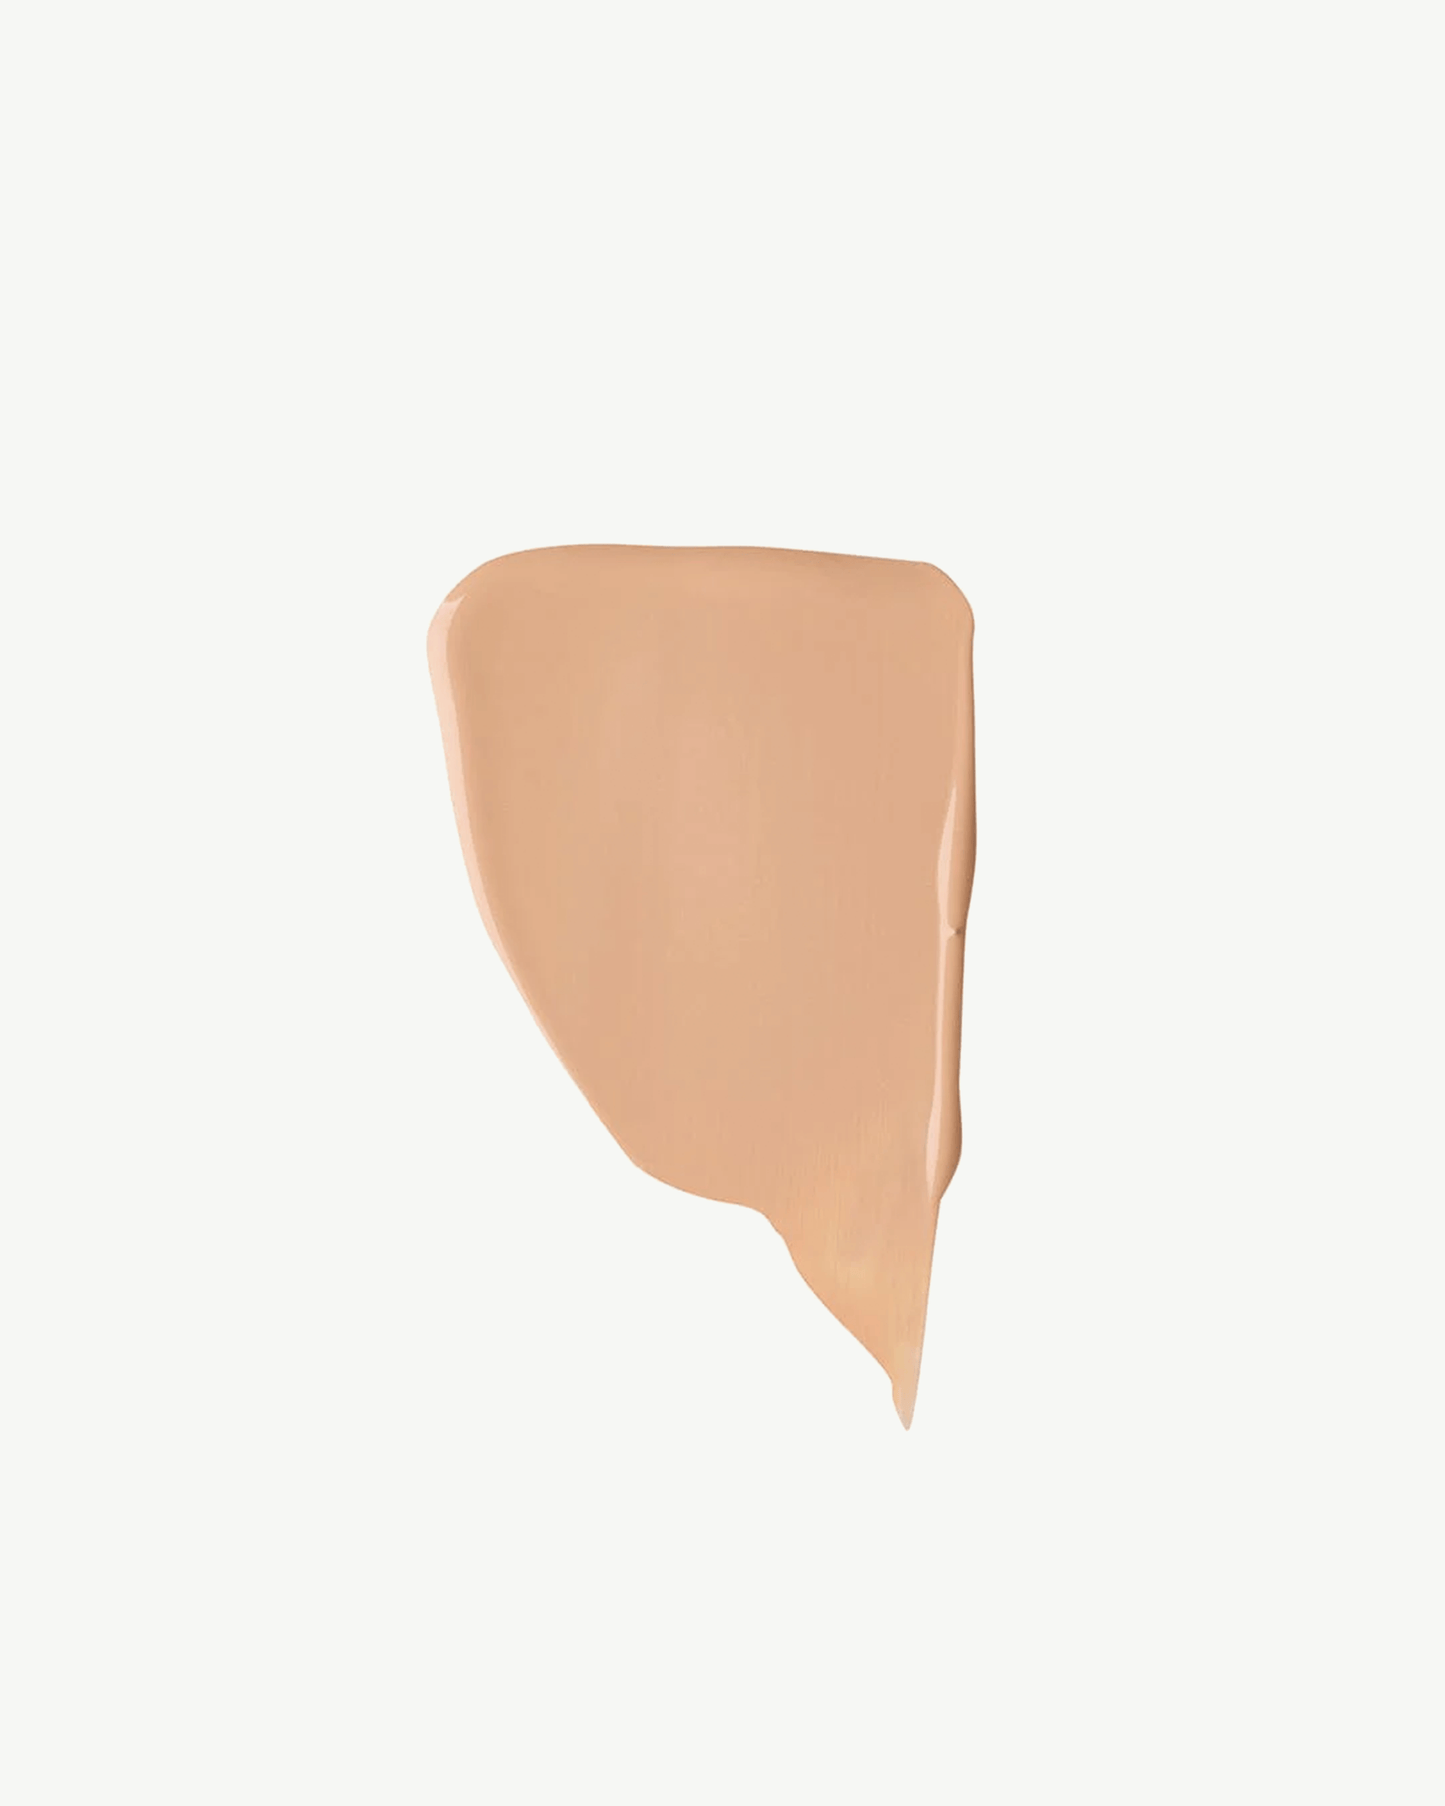 Shade 6 (for medium skin tones with neutral-peach undertones)